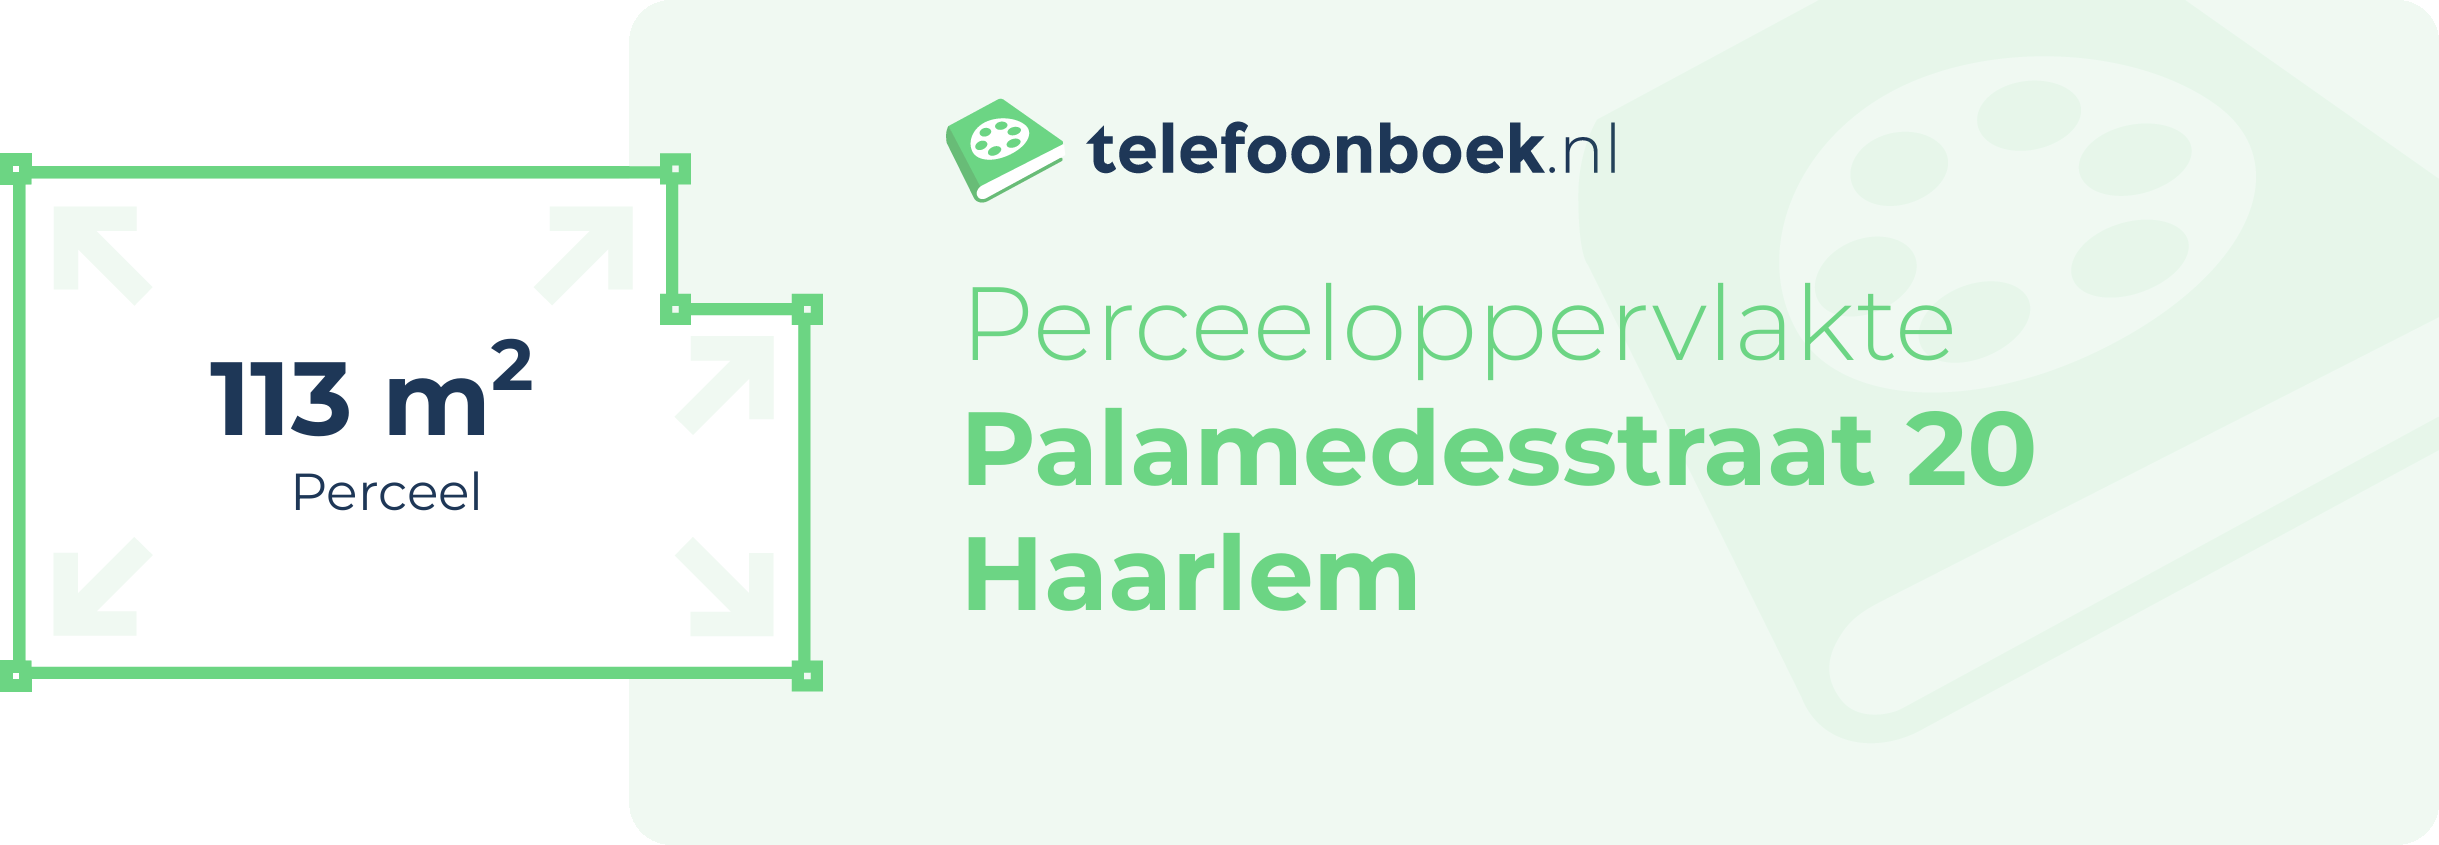 Perceeloppervlakte Palamedesstraat 20 Haarlem